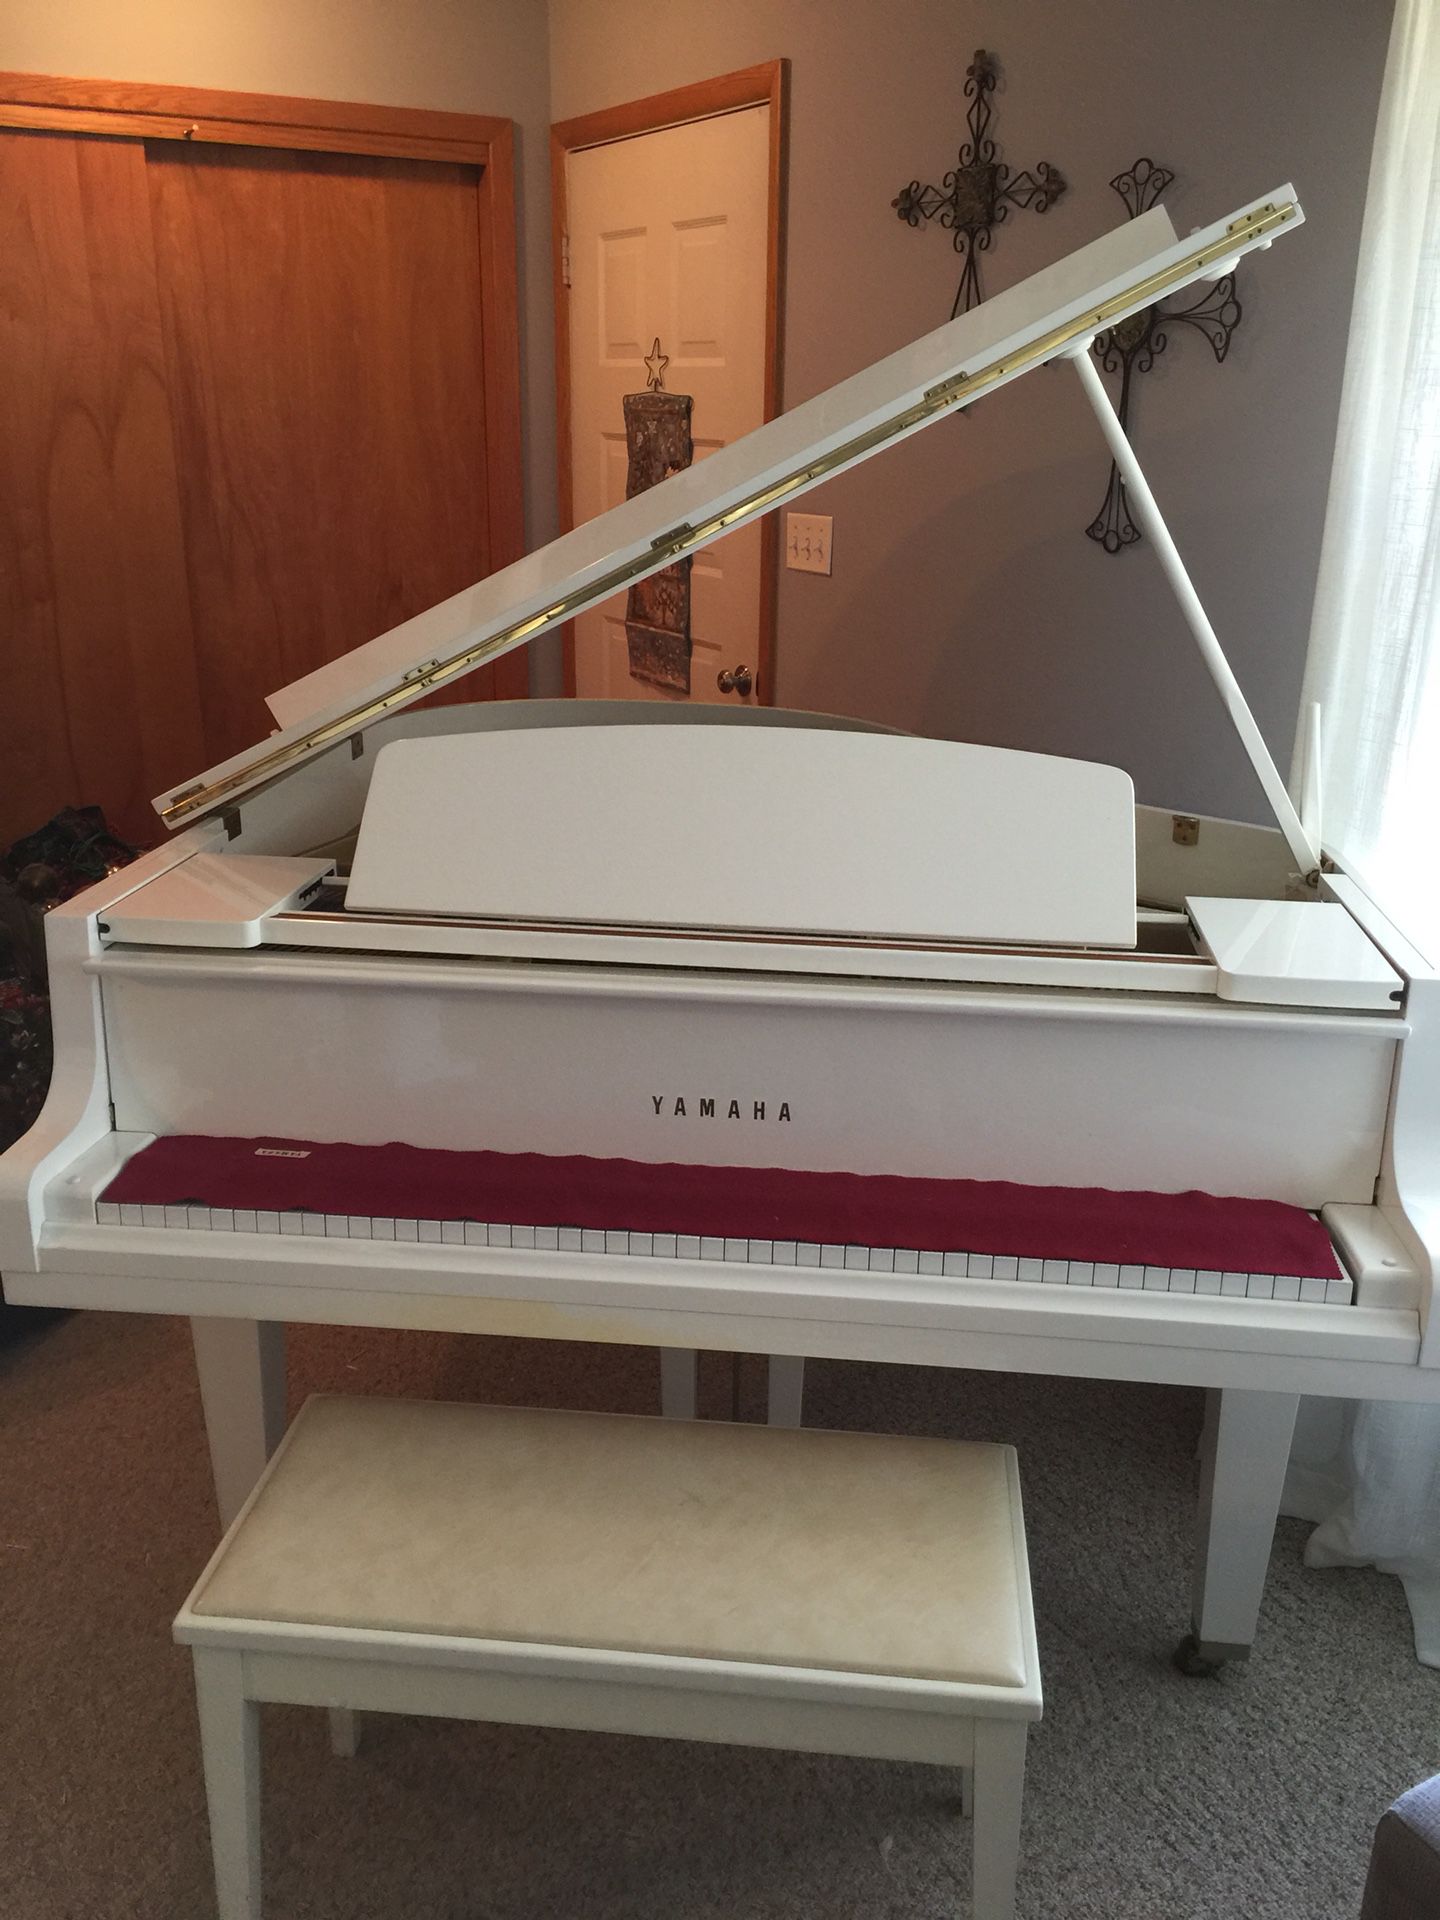 Yamaha white baby grand piano